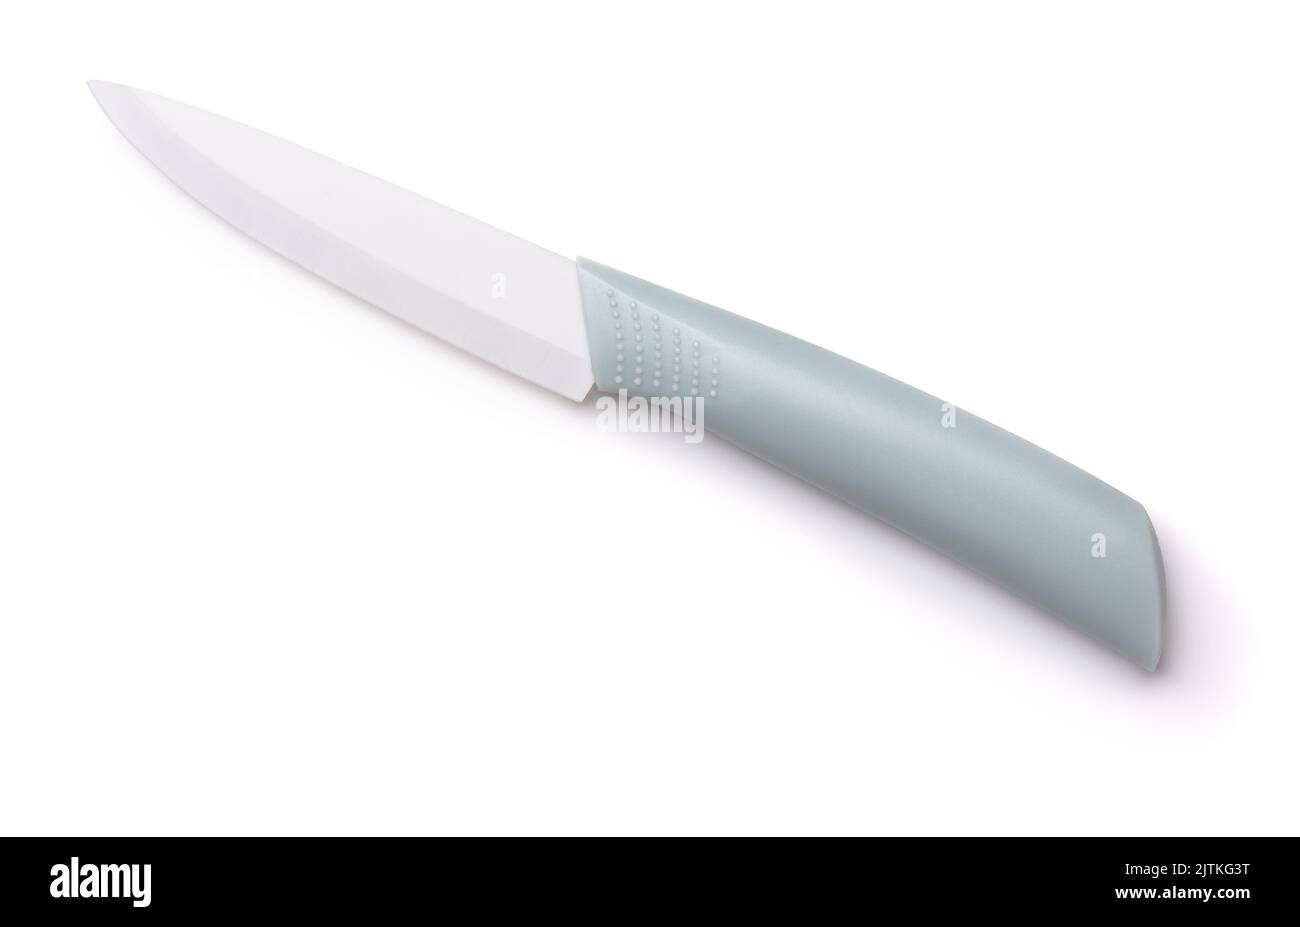 Cuchillo de cocina de cerámica de hoja blanca aislado en blanco Foto de stock